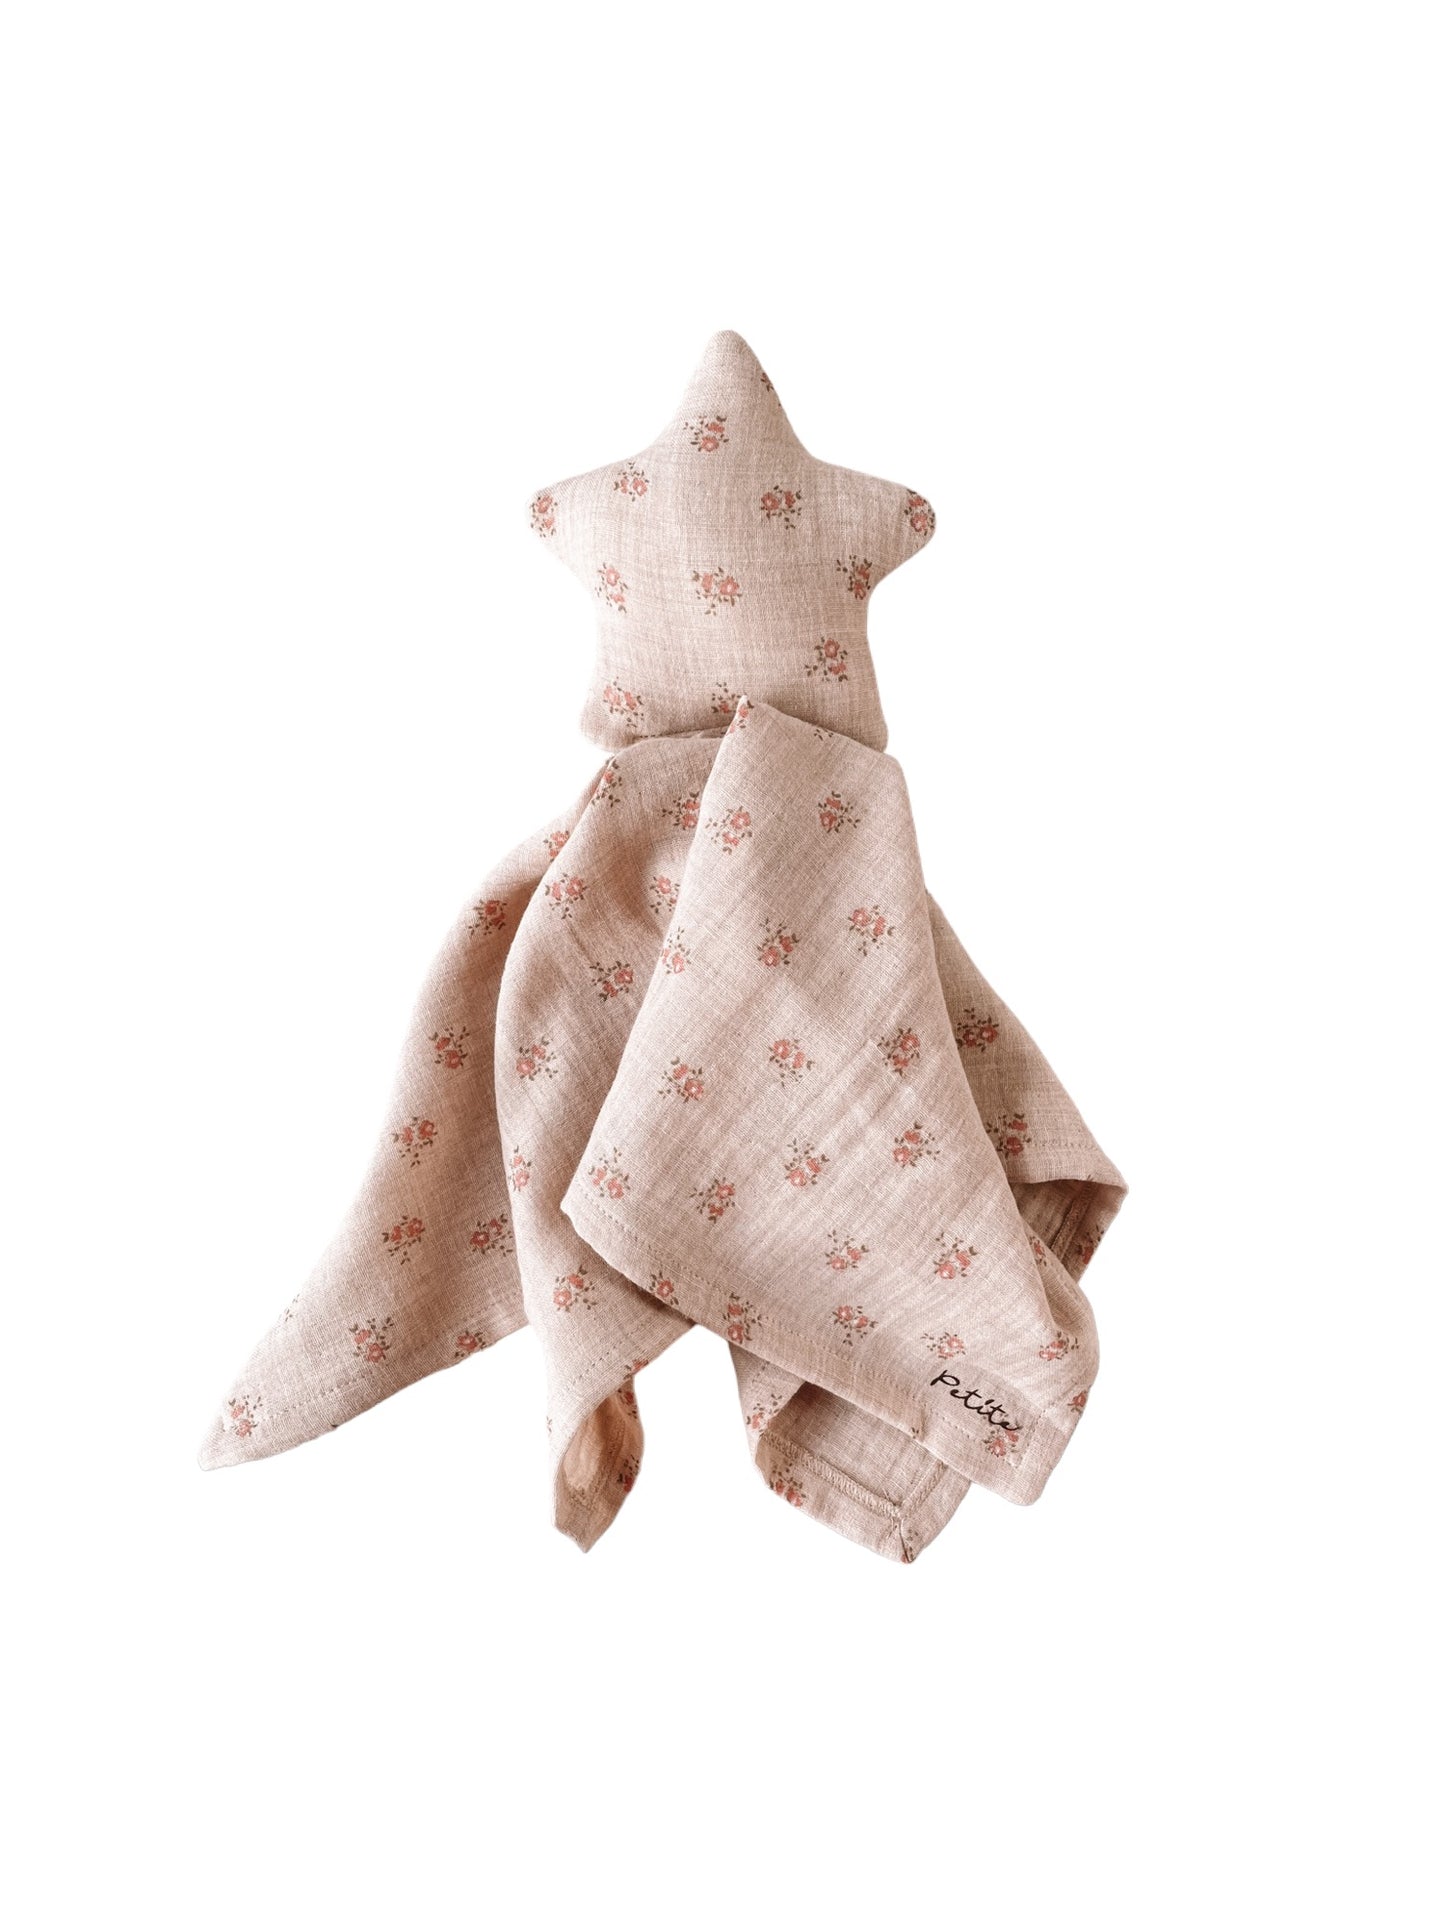 Little star cuddle cloth / melange floral beige